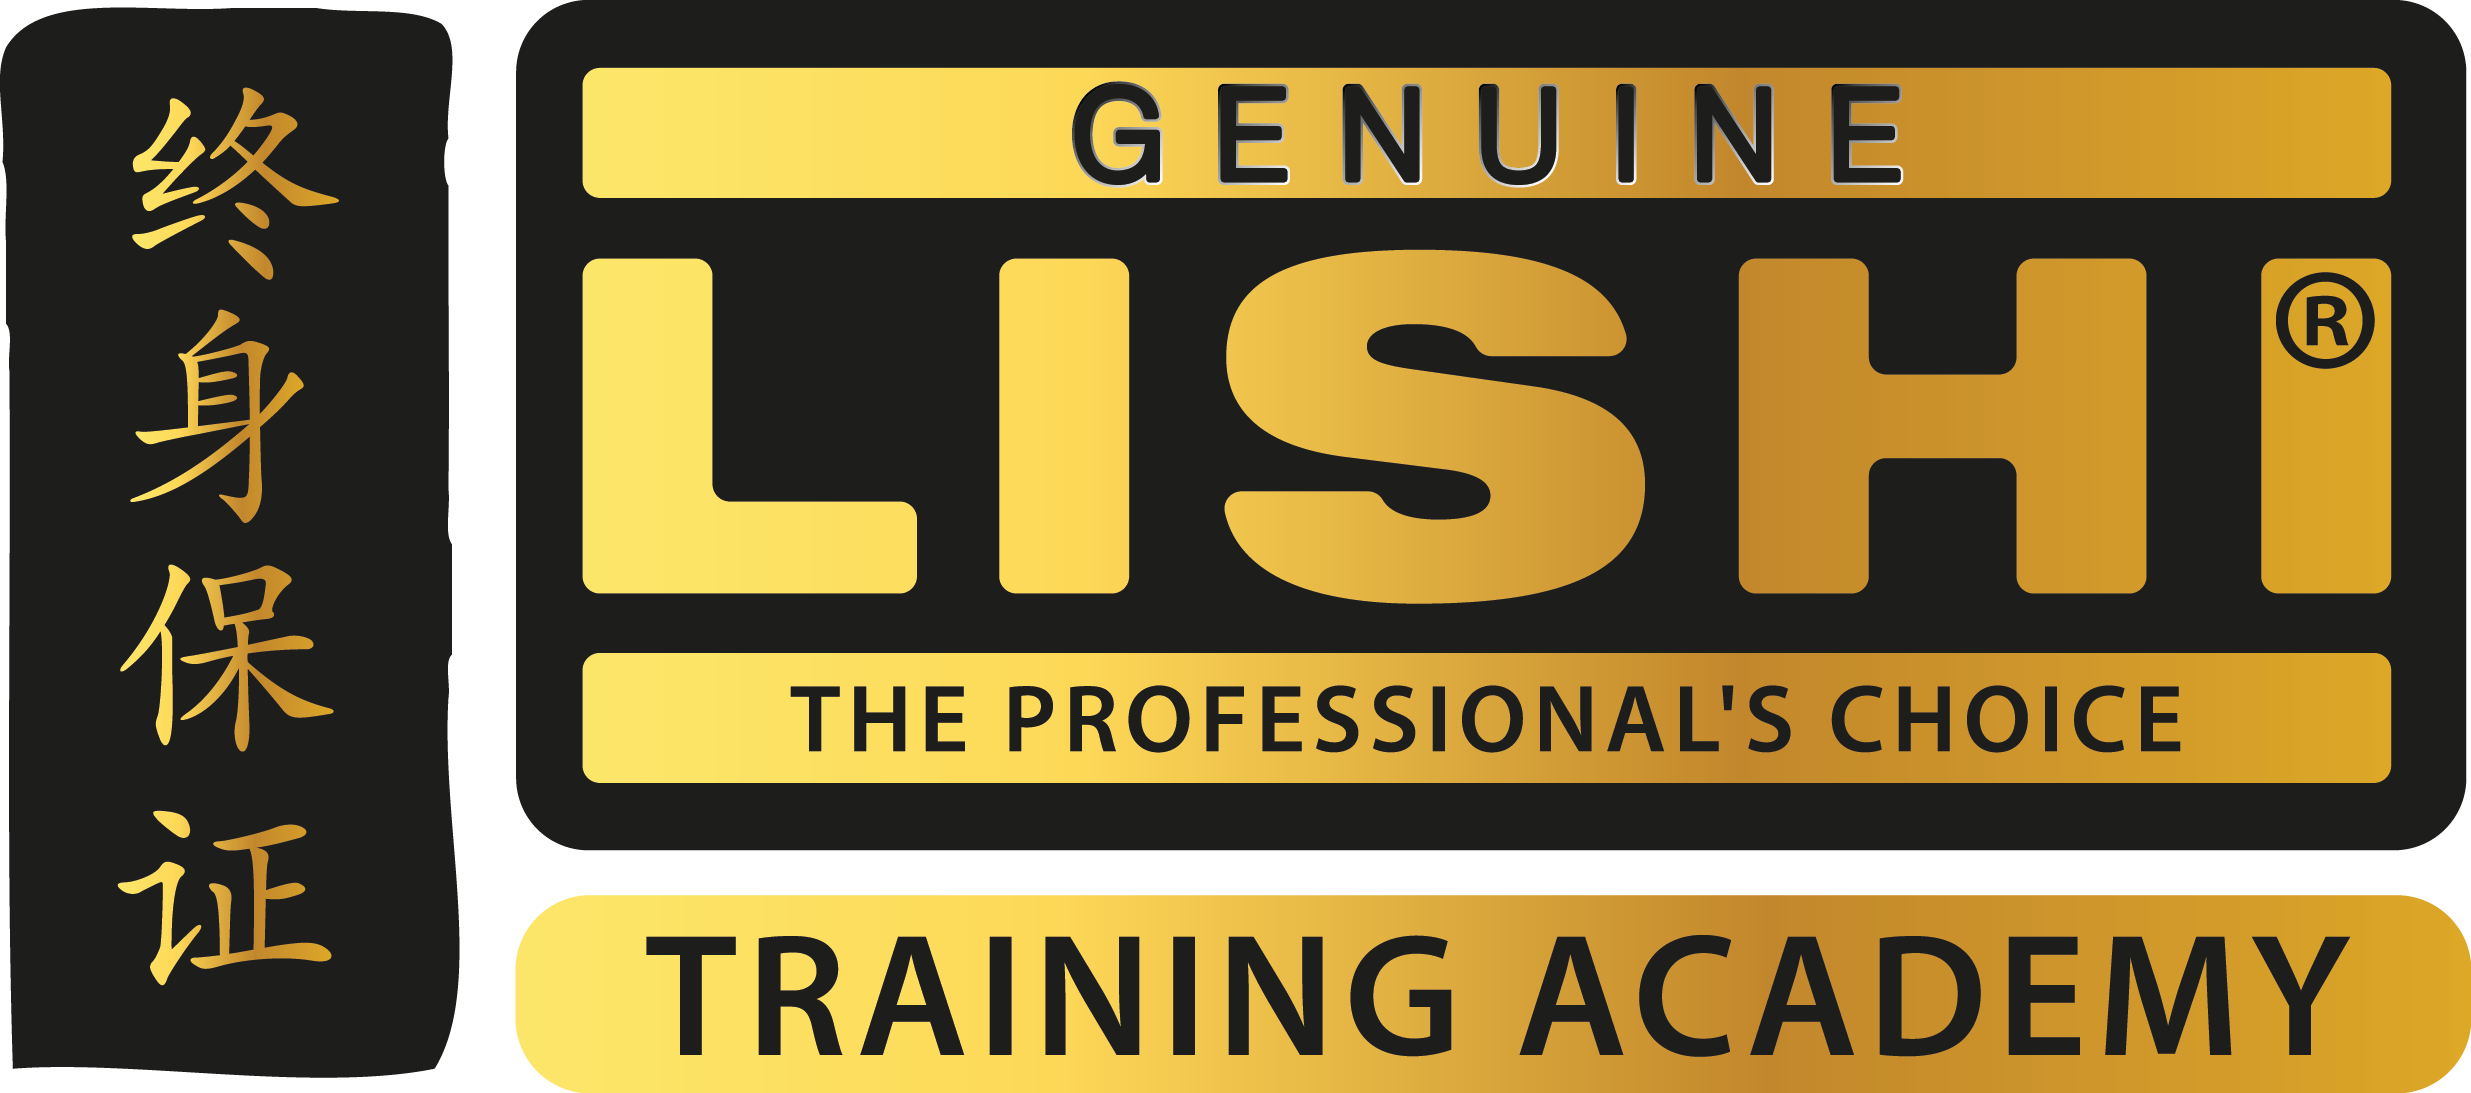 Genuine Lishi Training Academy